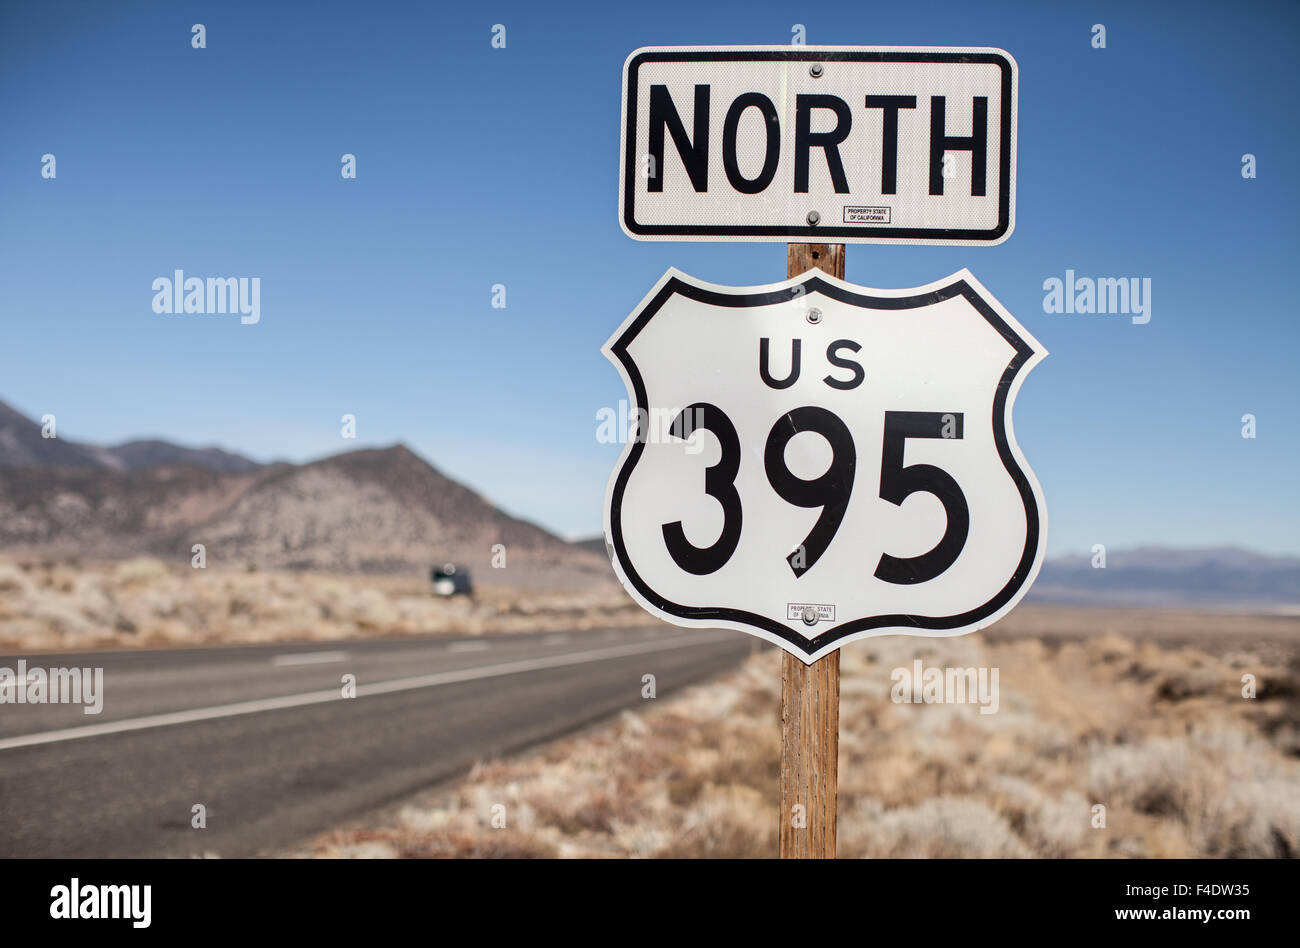 Stati Uniti Route 395 Nord segno. Foto Stock